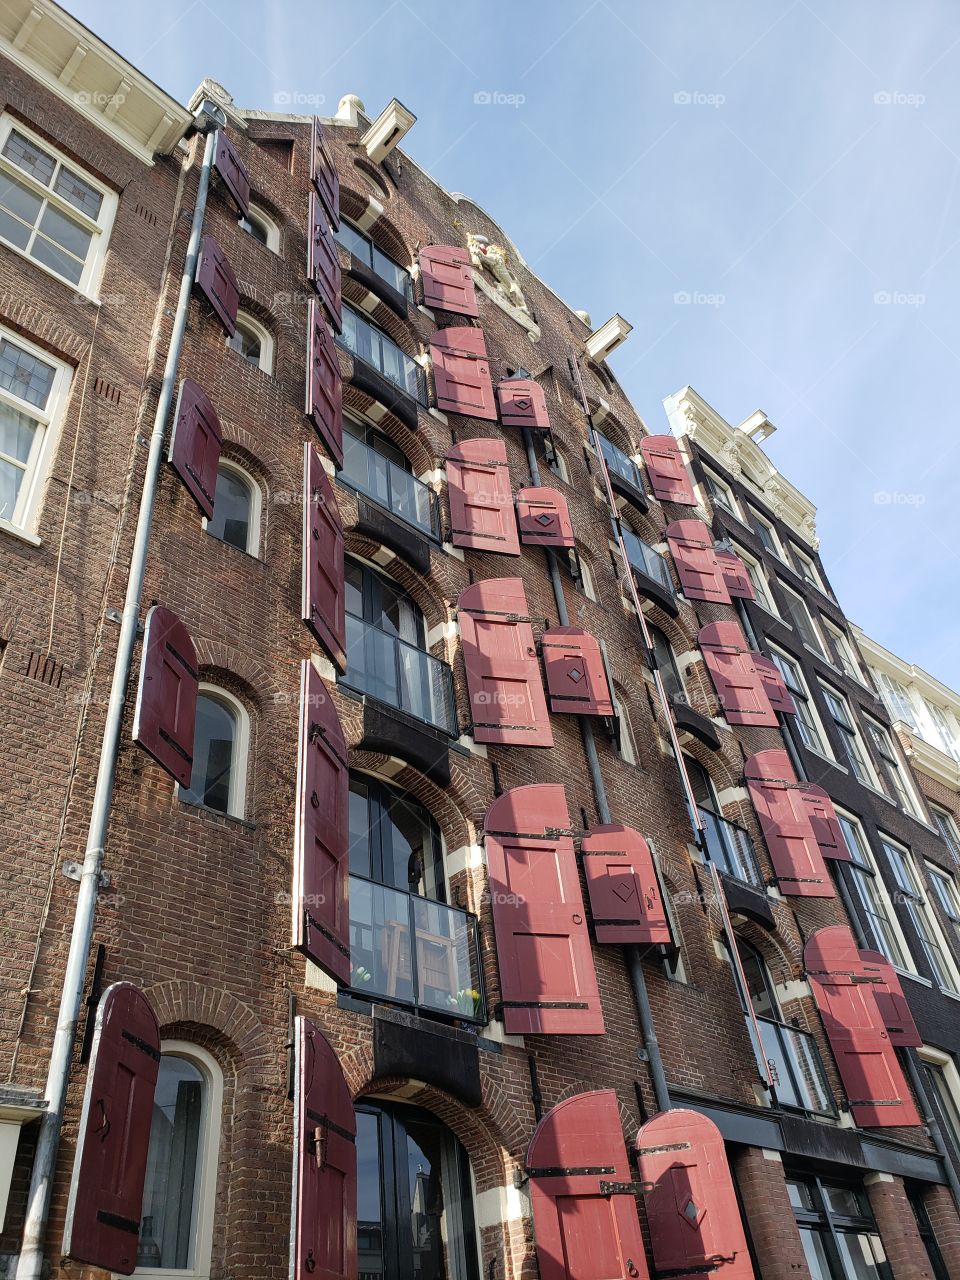 cortinas rojas adornan la arquitectura de Amsterdam